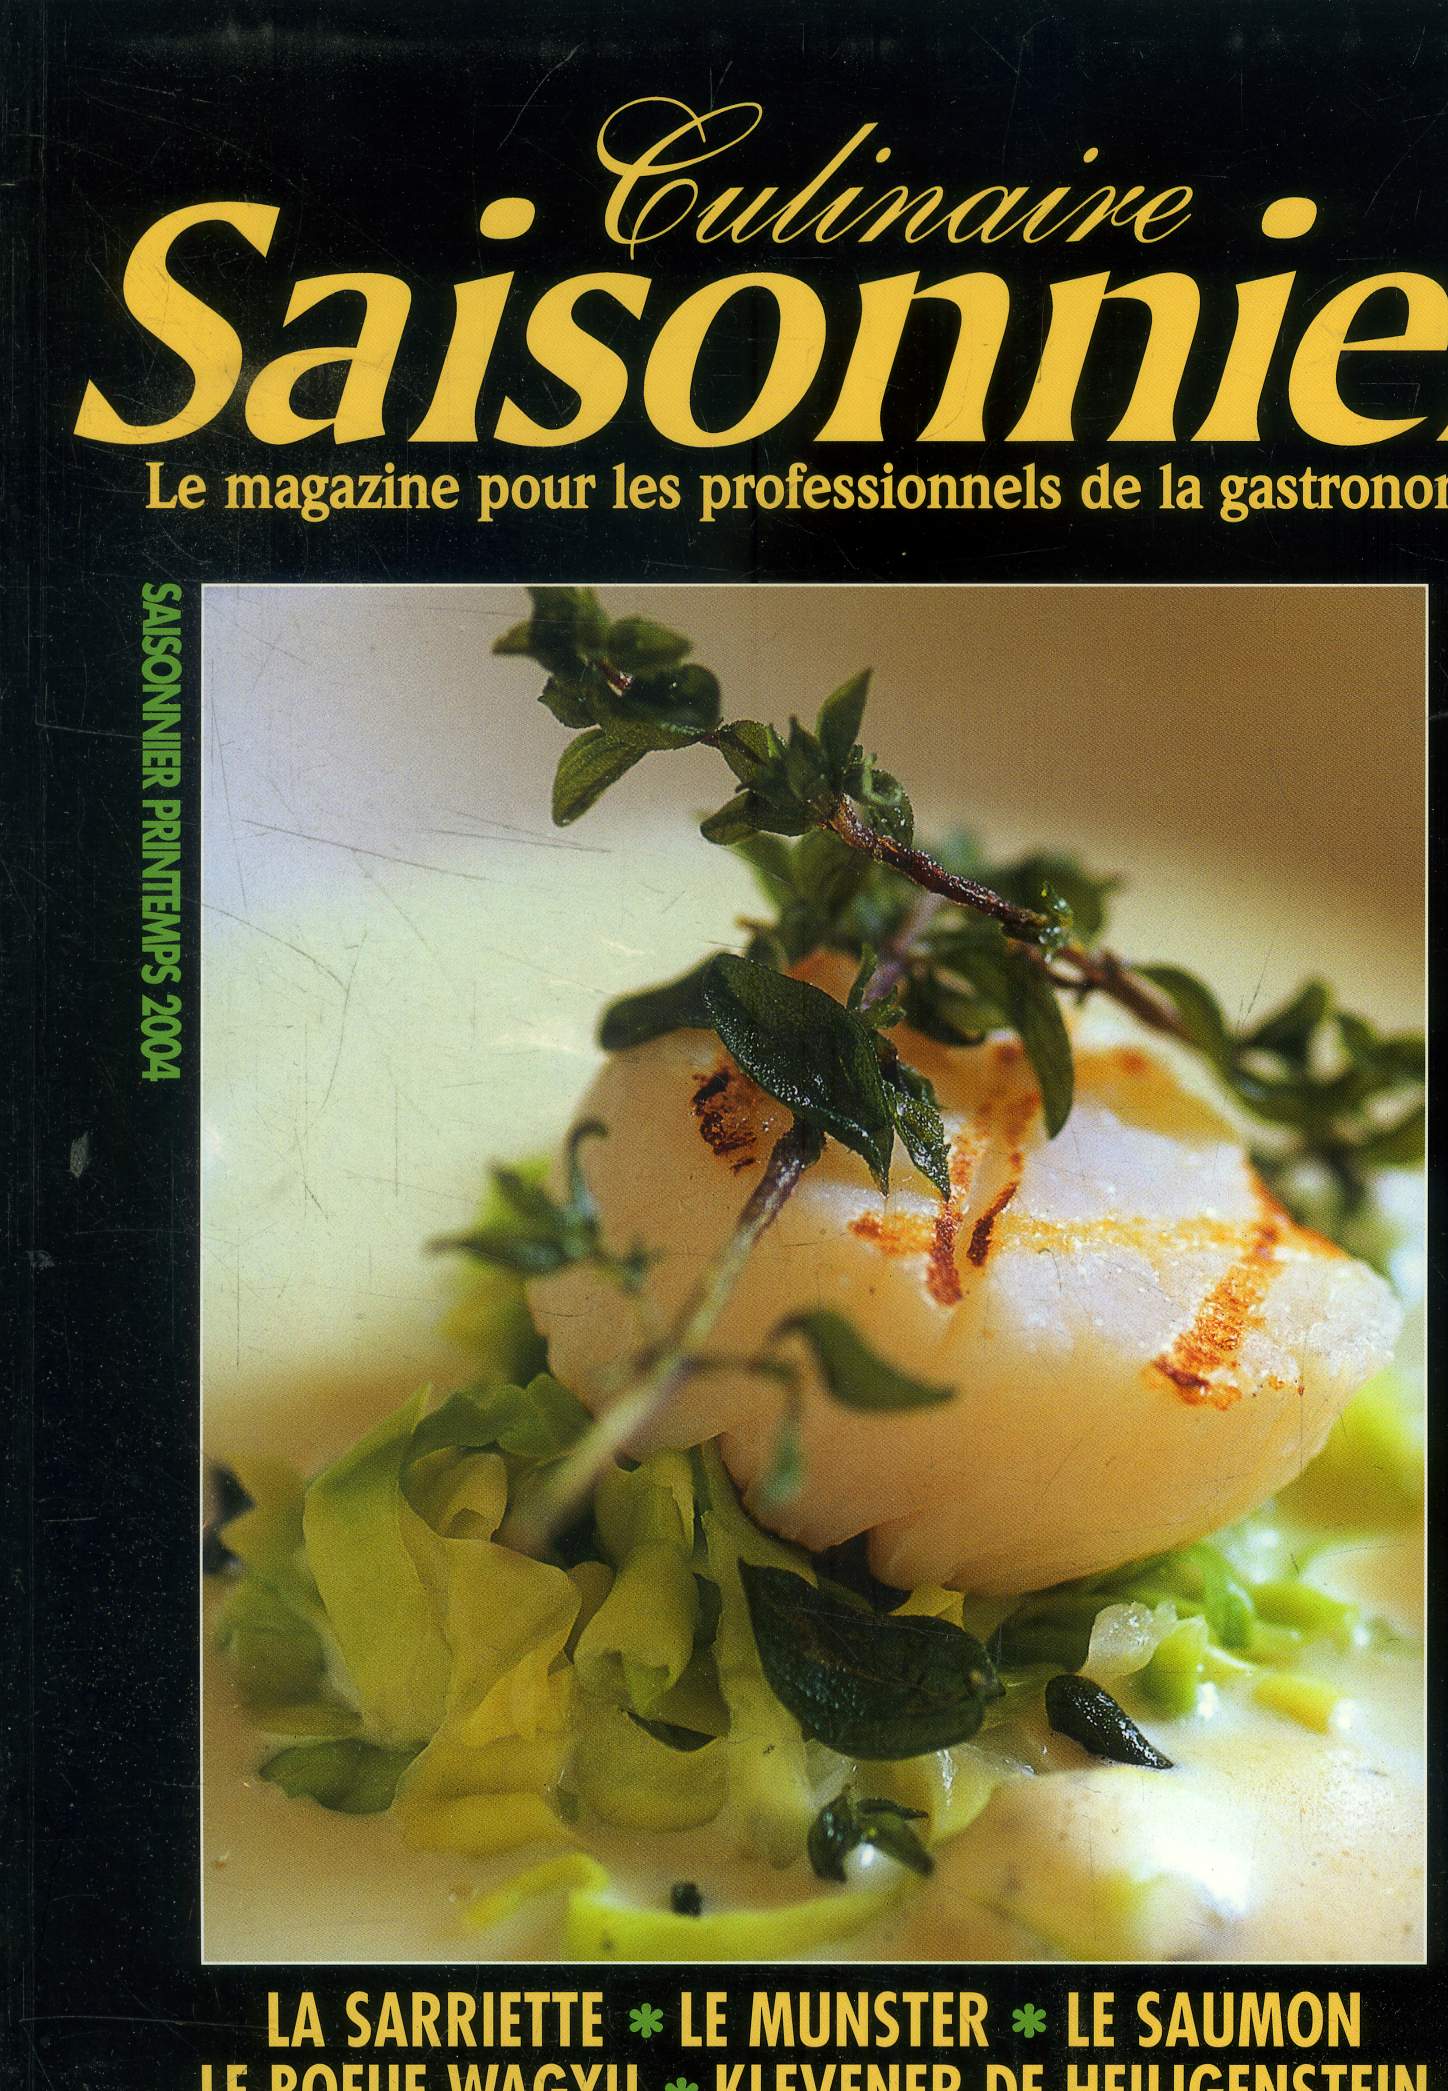 Culinaire saisonnier - Le magazine pour les professionnels de la gastronomie n 9 - Printemps 2004 : Rencontre avce le porc - le saumon - le boeuf Wagyu - Auverge Royale Favaro - Le Munster - Le Sebastopol,etc.